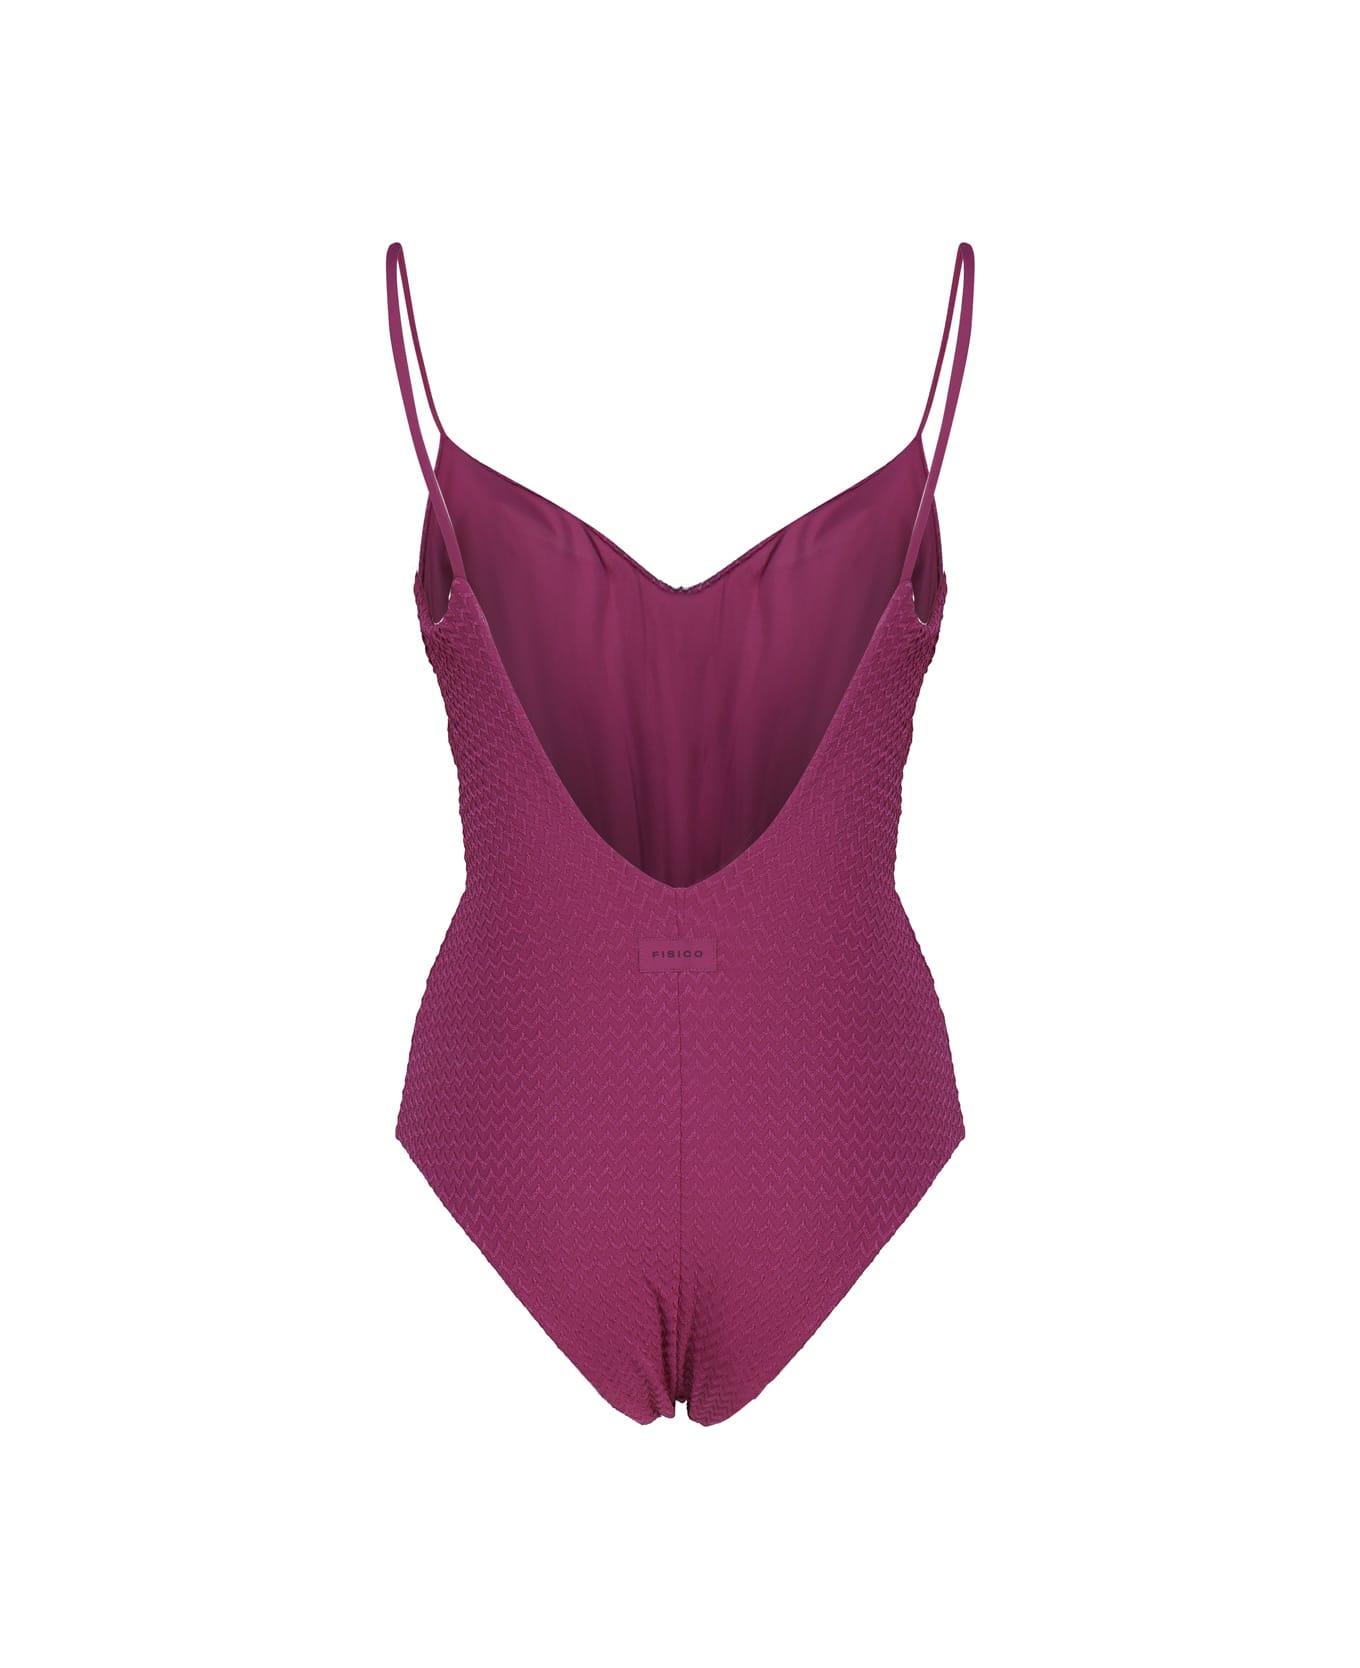 Fisico - Cristina Ferrari Solid Color One-piece Swimsuit - Sangria 水着